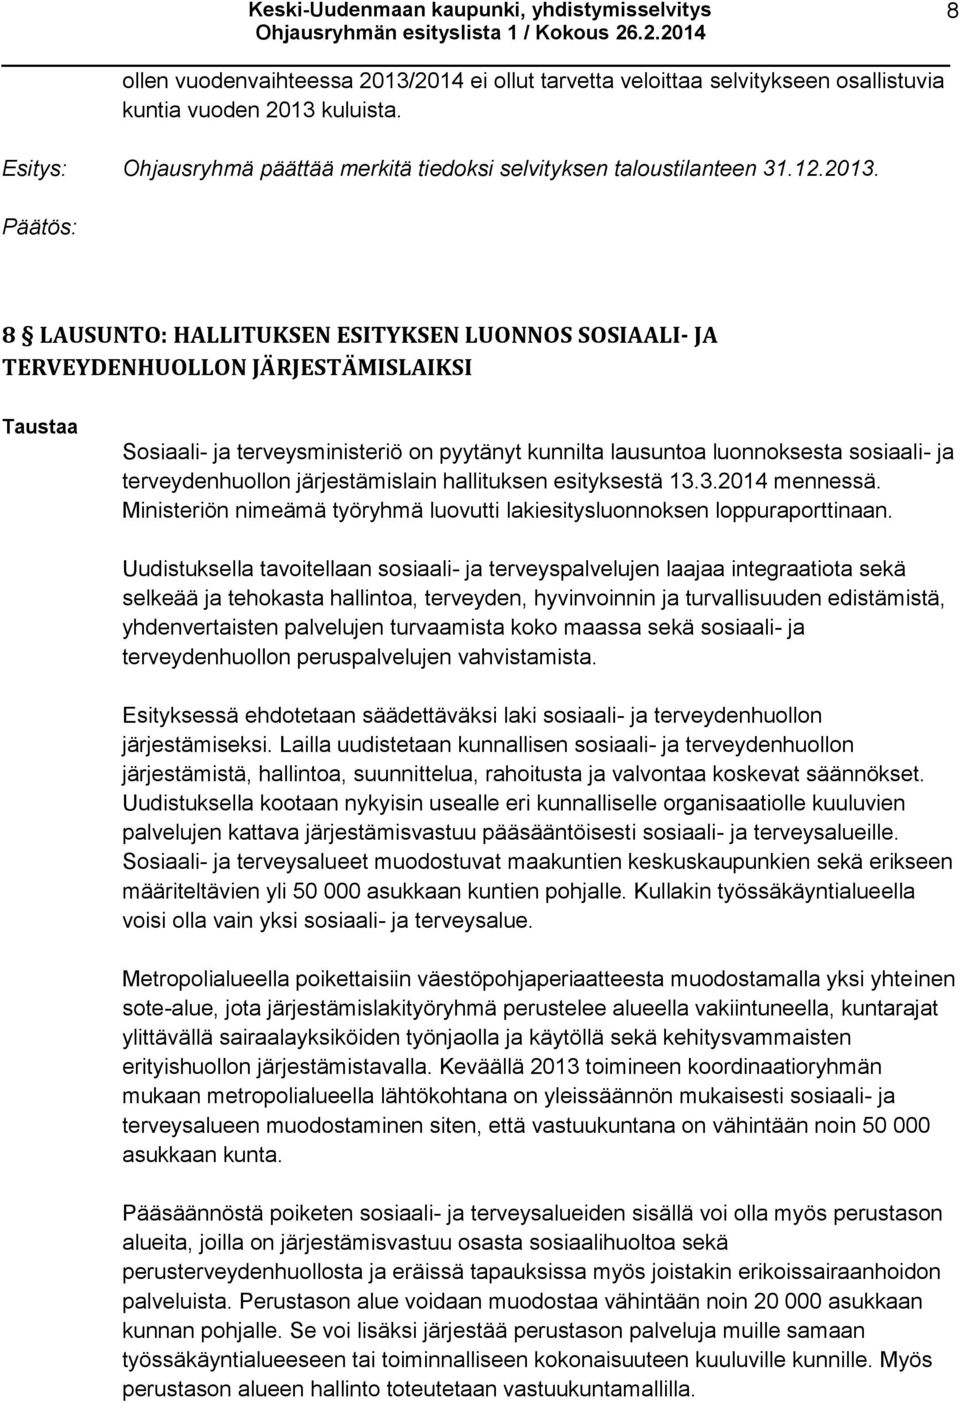 kuluista. Ohjausryhmä päättää merkitä tiedoksi selvityksen taloustilanteen 31.12.2013.